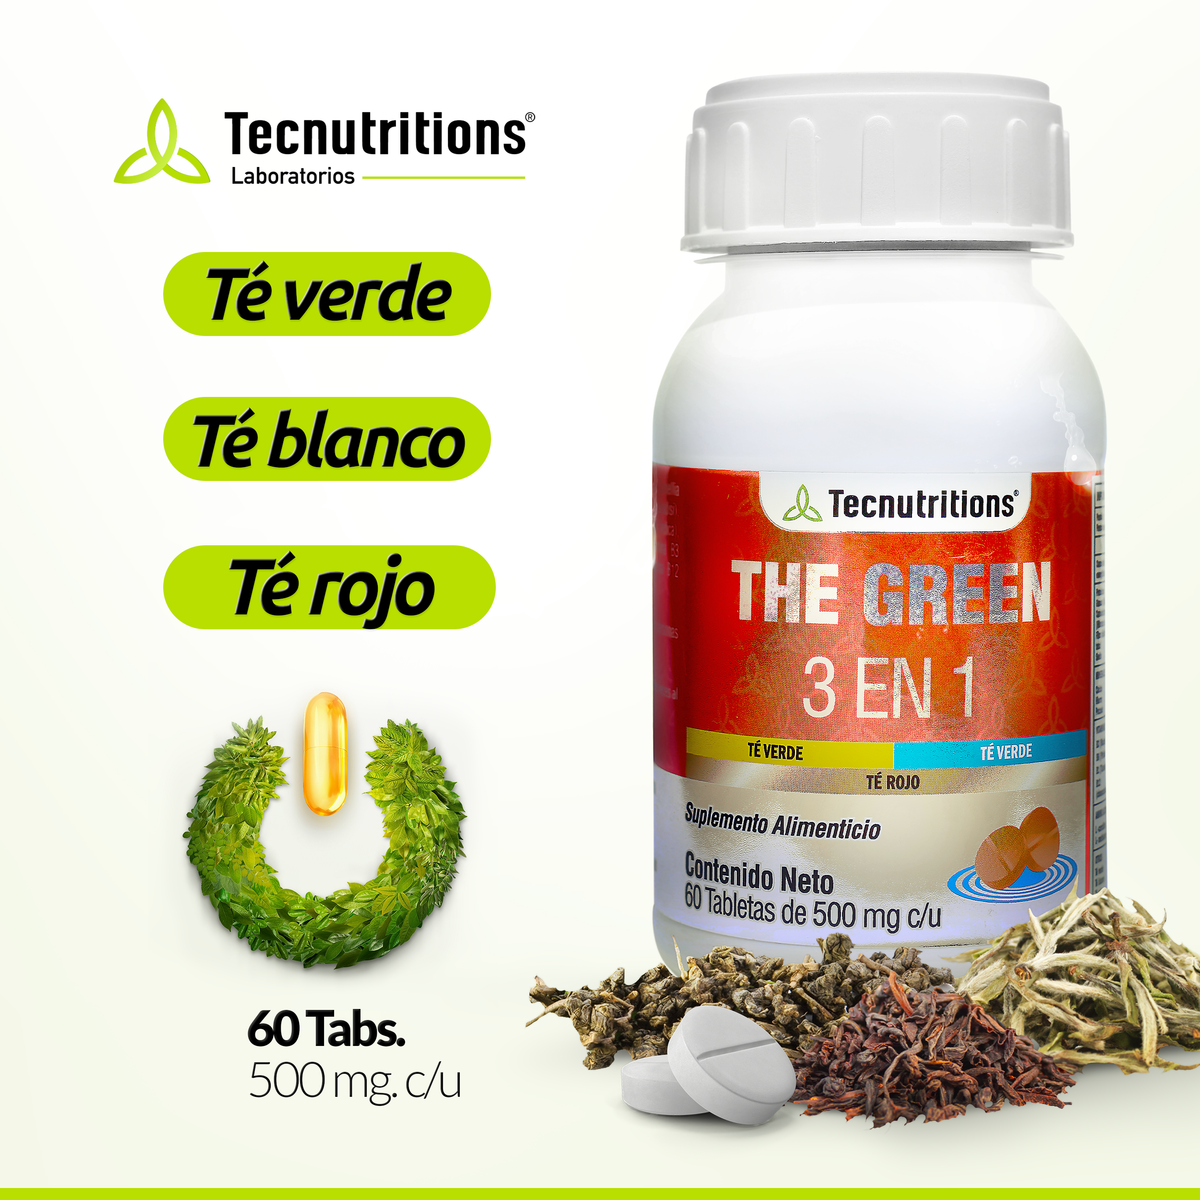 Suplemento alimenticio The Green 3 en 1, 60 tabs, con té blanco, rojo, verde, contribuye al control de la alimentación